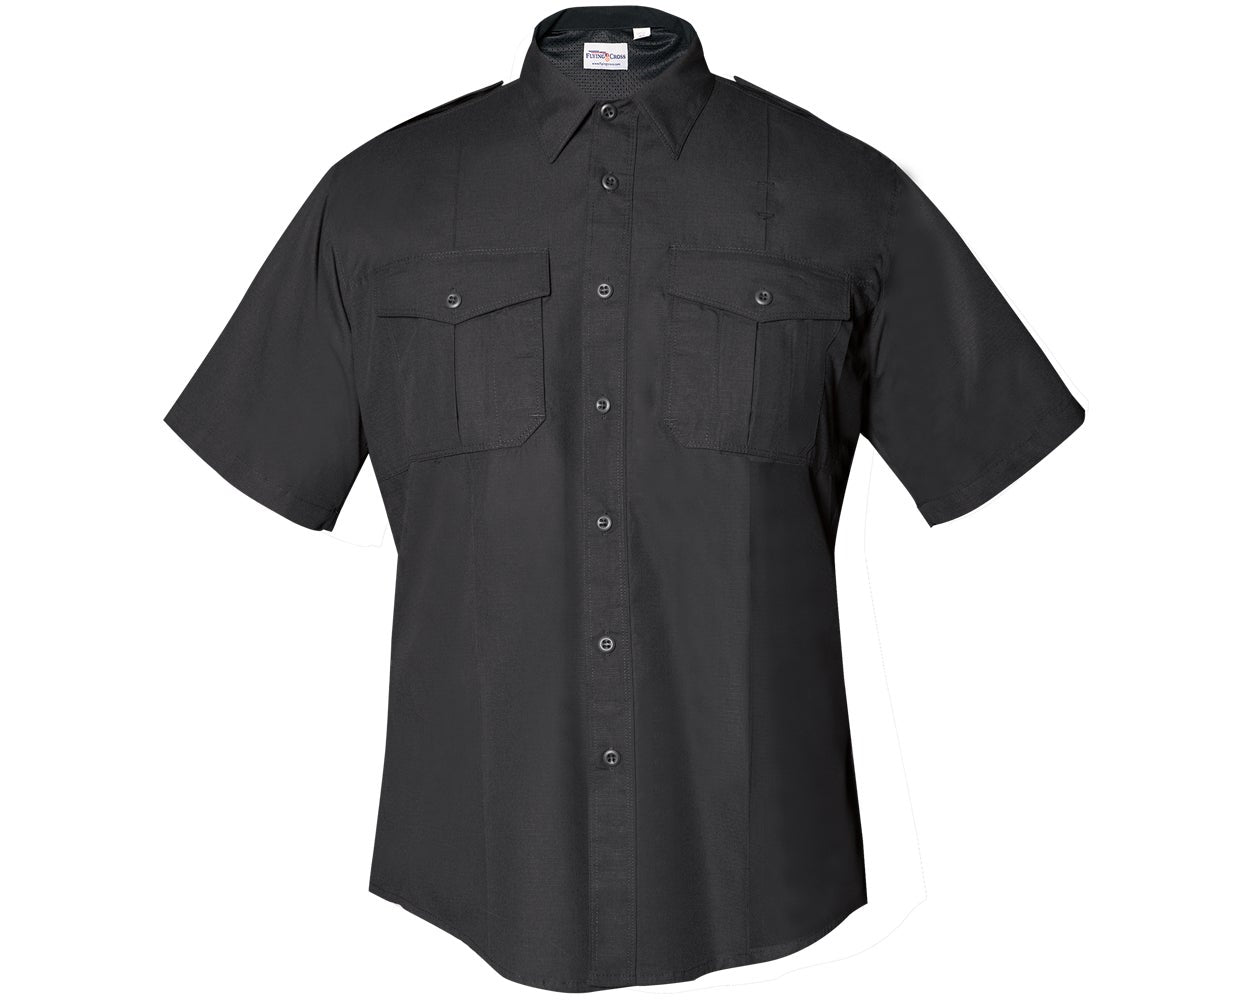 Flying Cross FX STAT Women's Class B Short Sleeve Uniform Shirt FX7100W - Black, 36